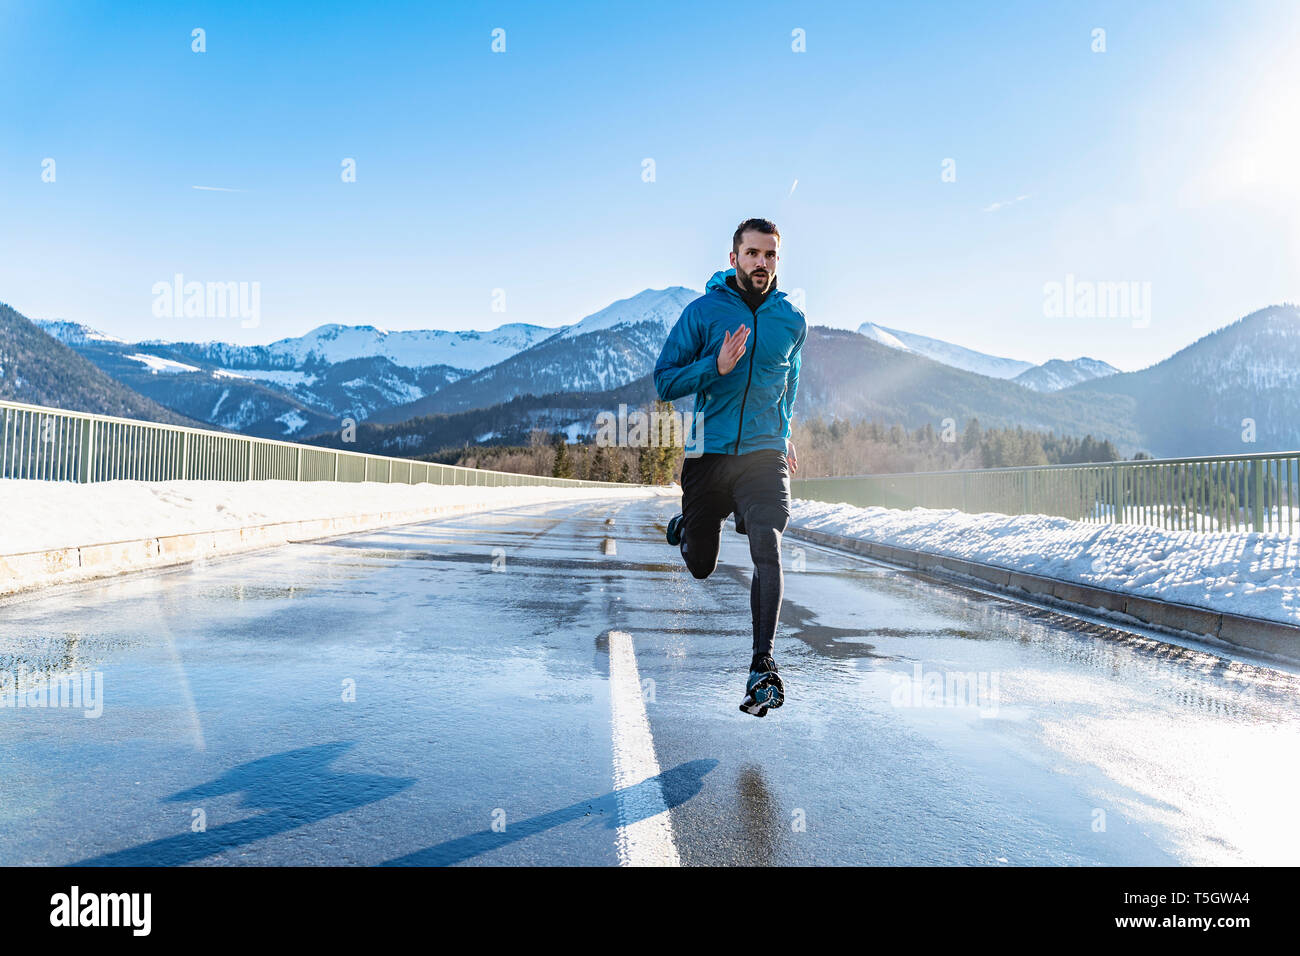 Germany, Bavaria, sportif homme qui court sur une route en hiver Banque D'Images